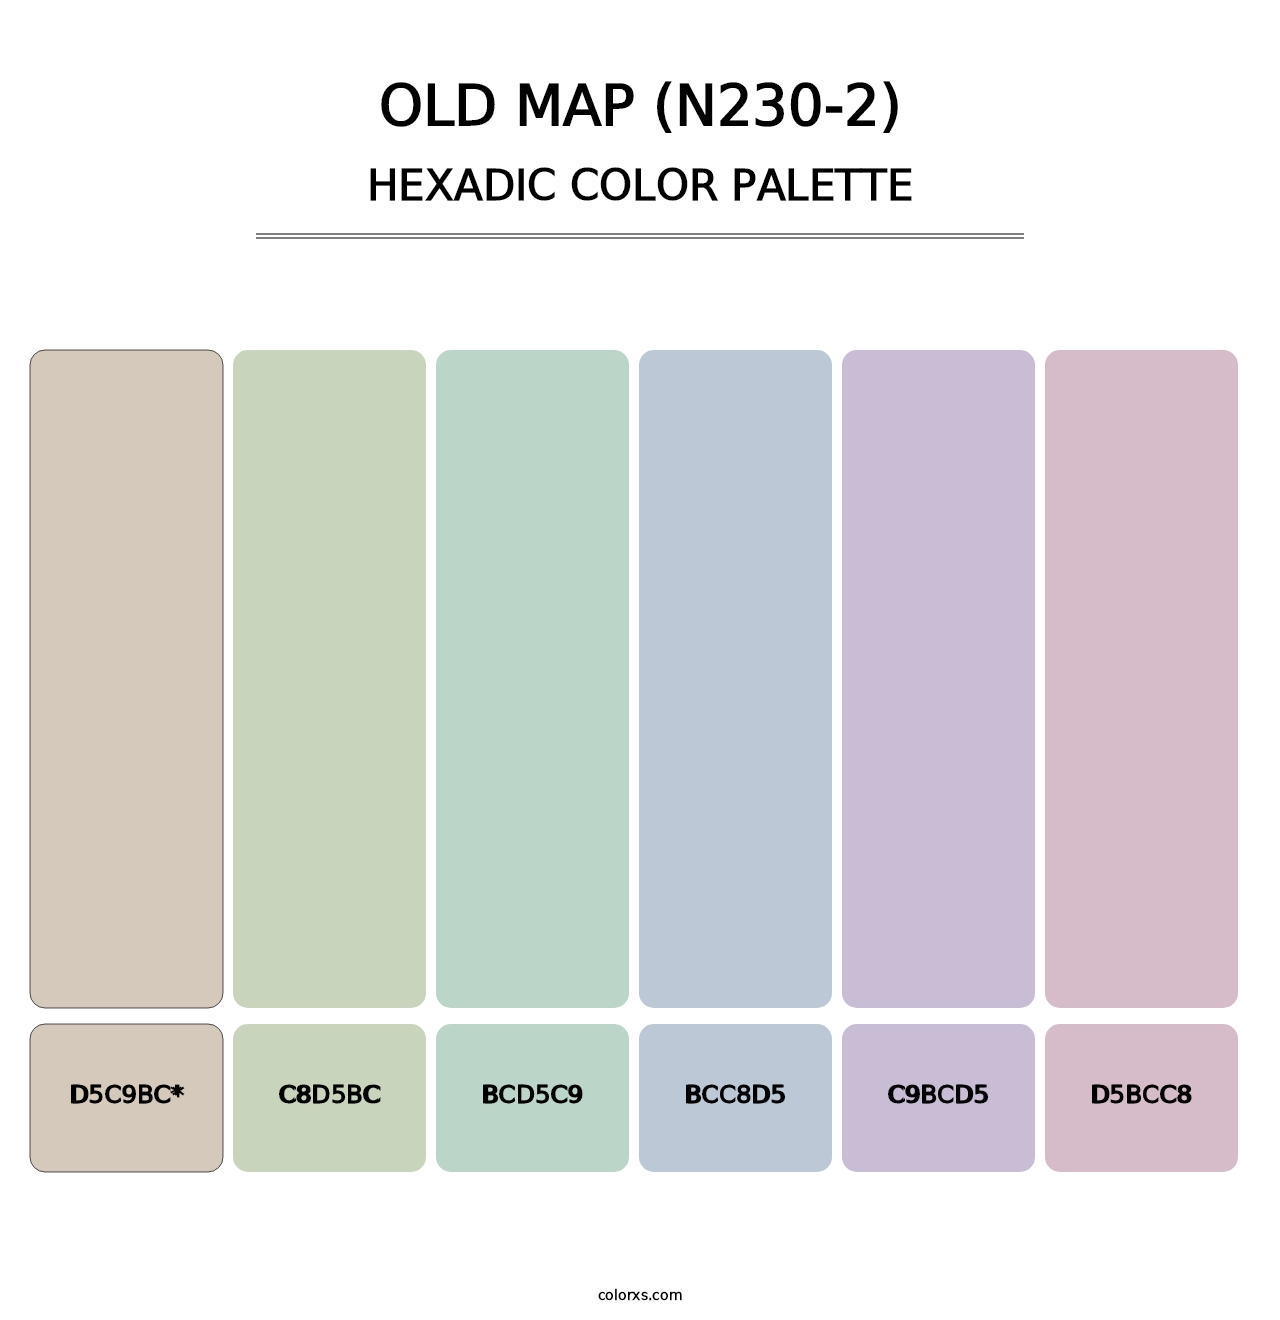 Old Map (N230-2) - Hexadic Color Palette